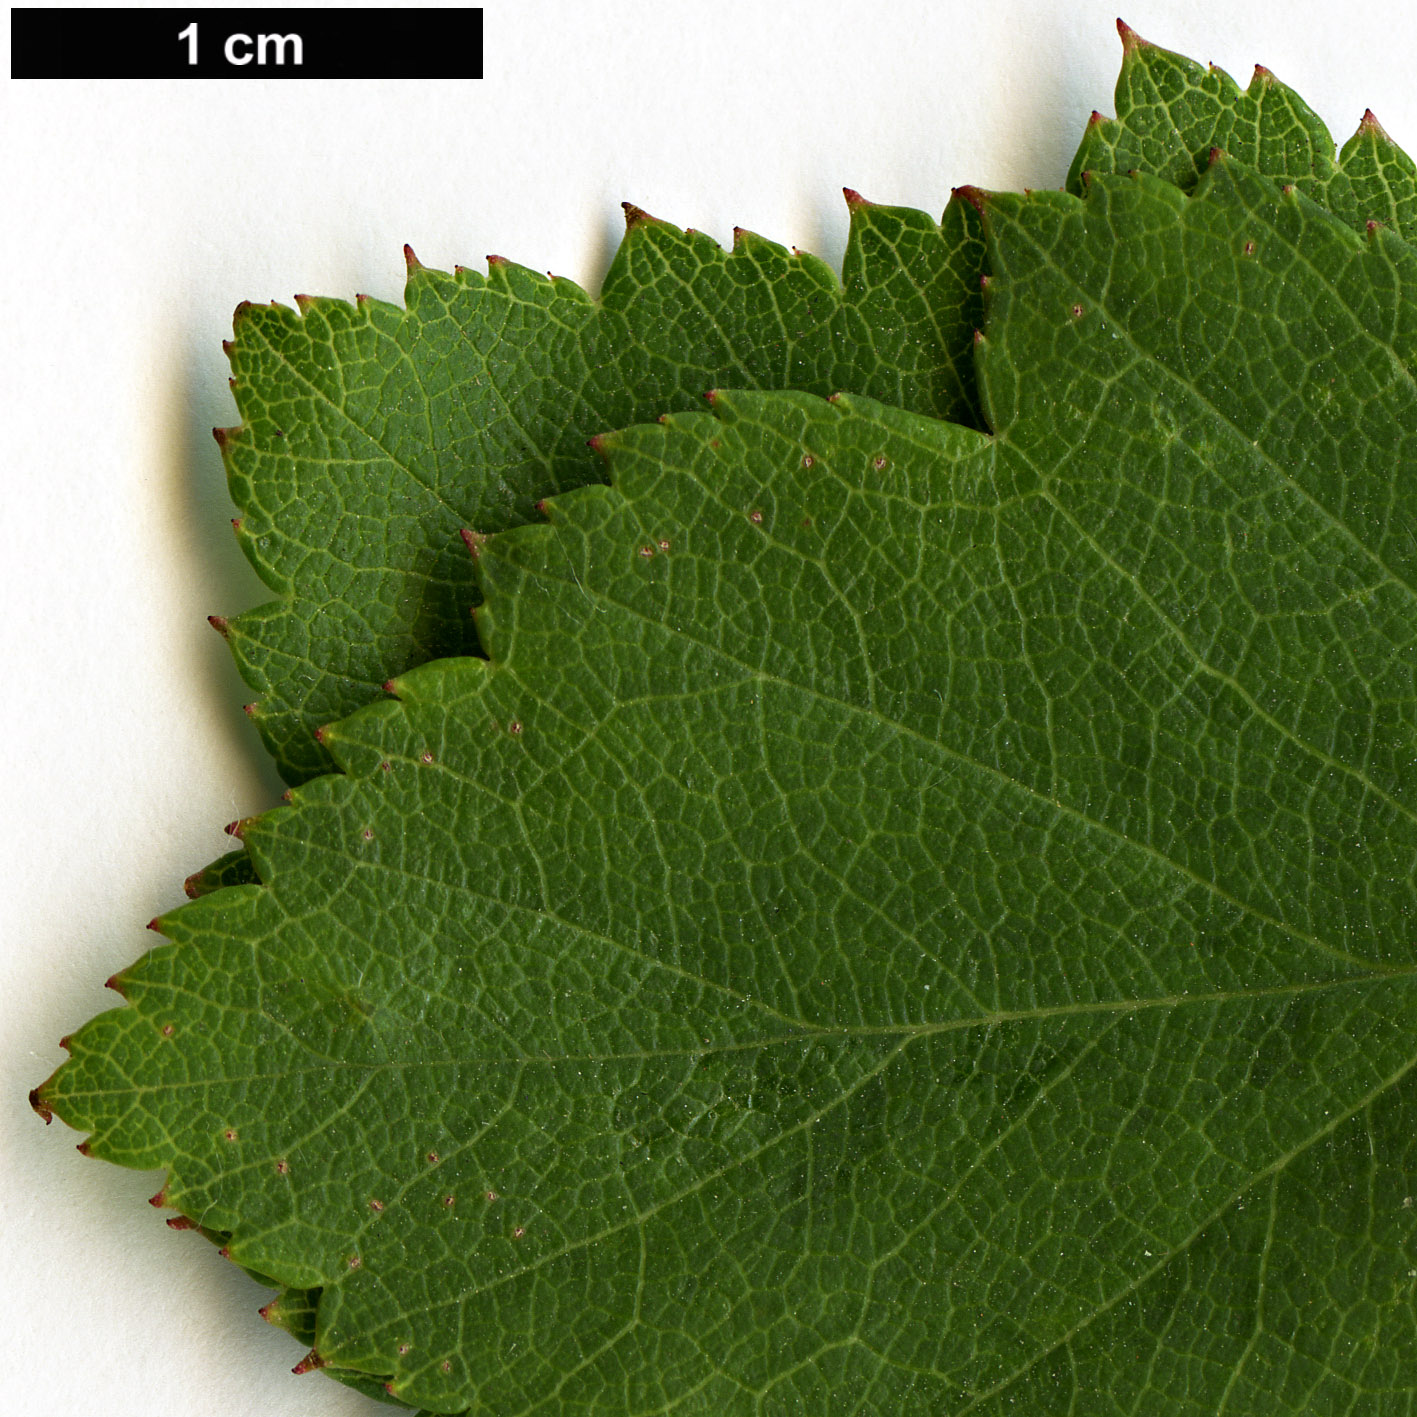 High resolution image: Family: Rosaceae - Genus: Crataegus - Taxon: pulcherrima